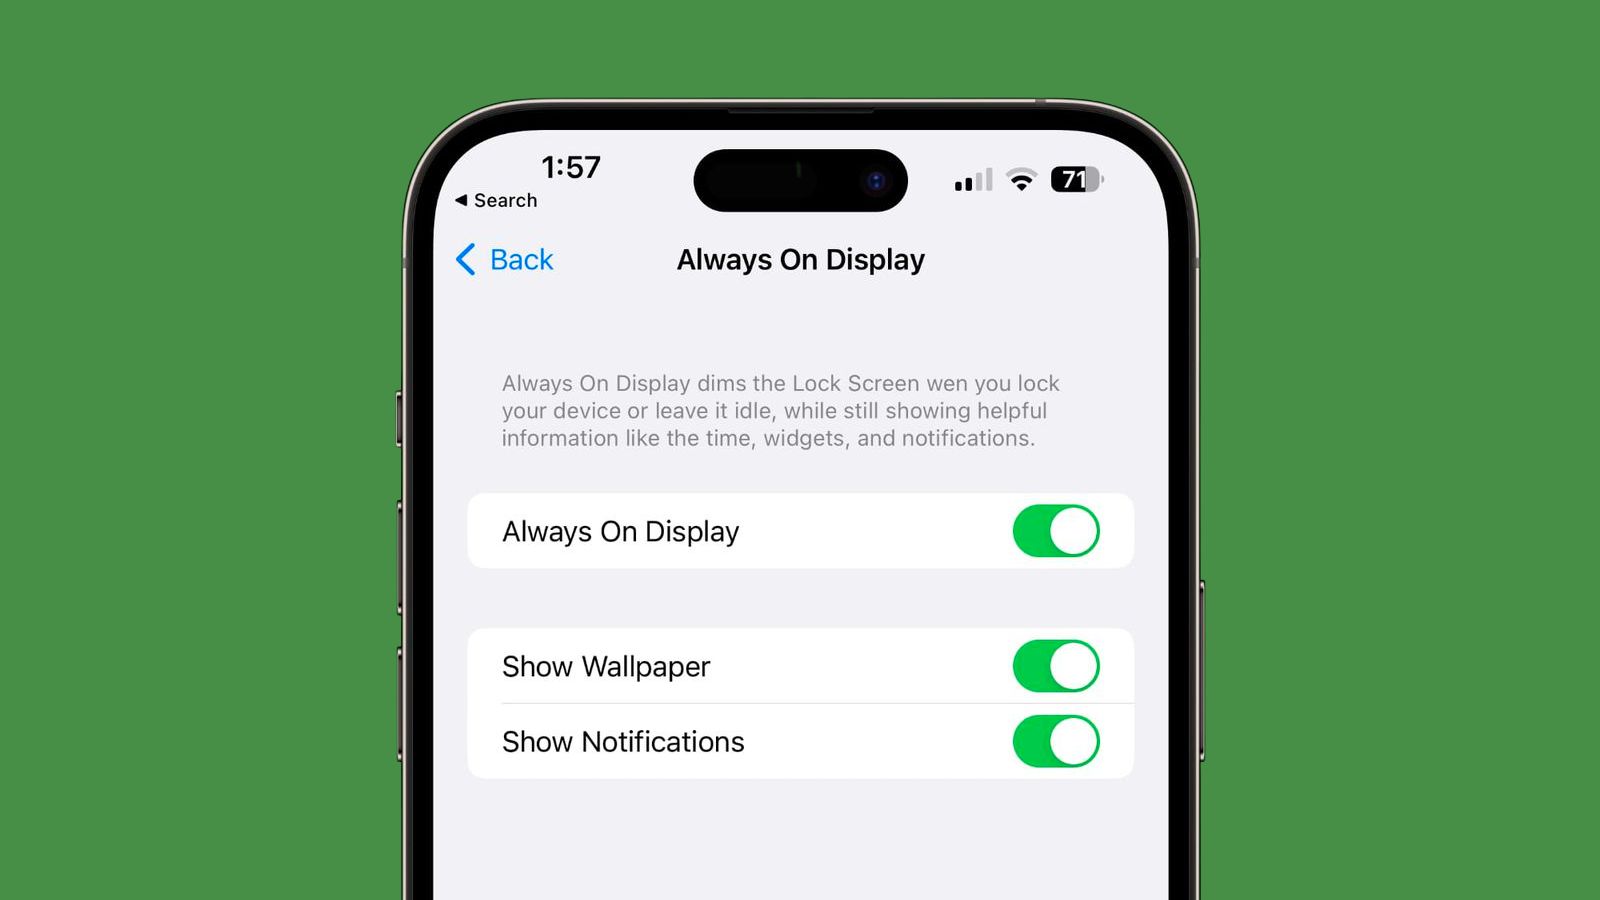 Always-on Display: Vô số điện thoại có tính năng Always-on Display, và sản phẩm này trên iPhone cũng không phải là ngoại lệ. Nhờ tính năng này, màn hình điện thoại của bạn sẽ hiển thị thông tin cần thiết ngay cả khi màn hình đã tắt hoàn toàn. Điều này giúp tiết kiệm pin và tiện lợi hơn cho bạn. Hãy xem hình ảnh liên quan để biết thêm chi tiết.